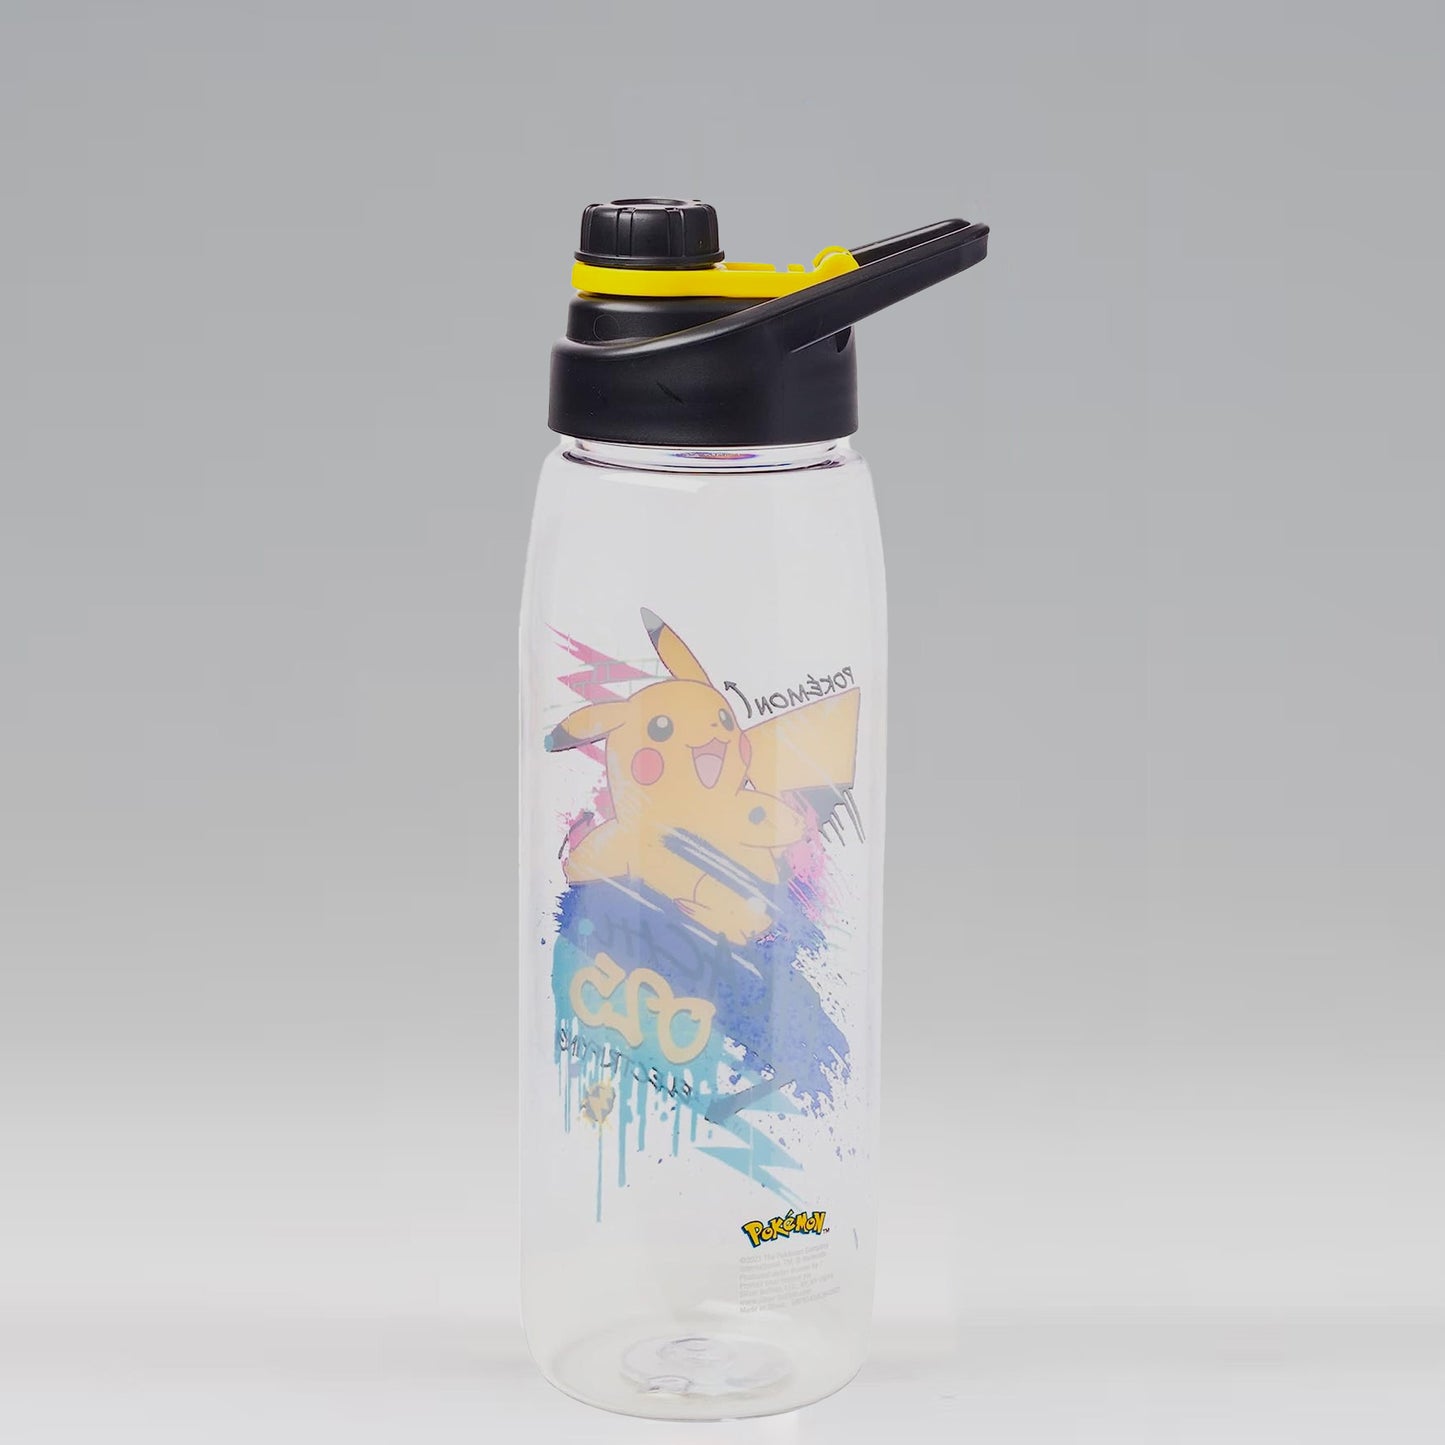 Electrifying Pikachu (Pokemon) Skate Graffiti 28 oz. Water Bottle